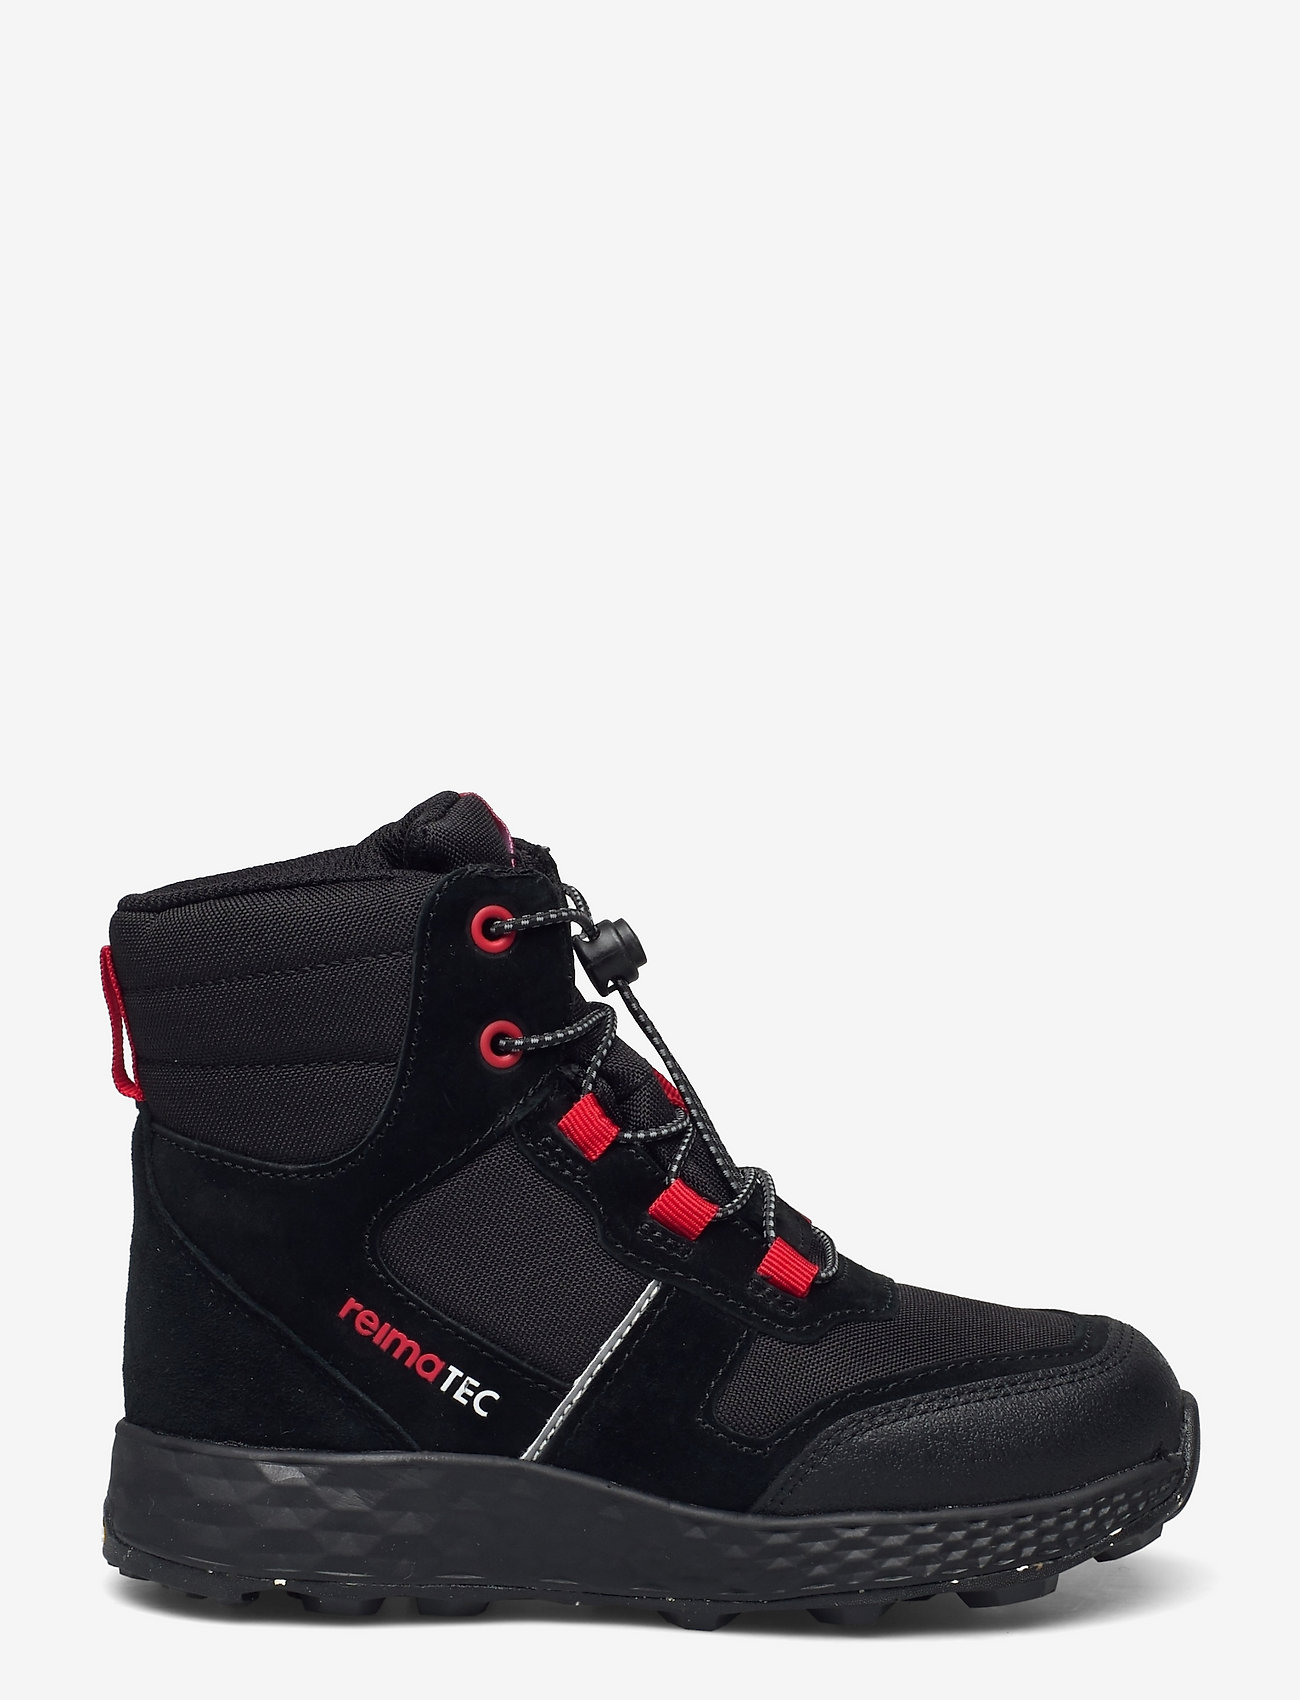 Reima - Reimatec shoes, Ehtii - kinder - black - 1